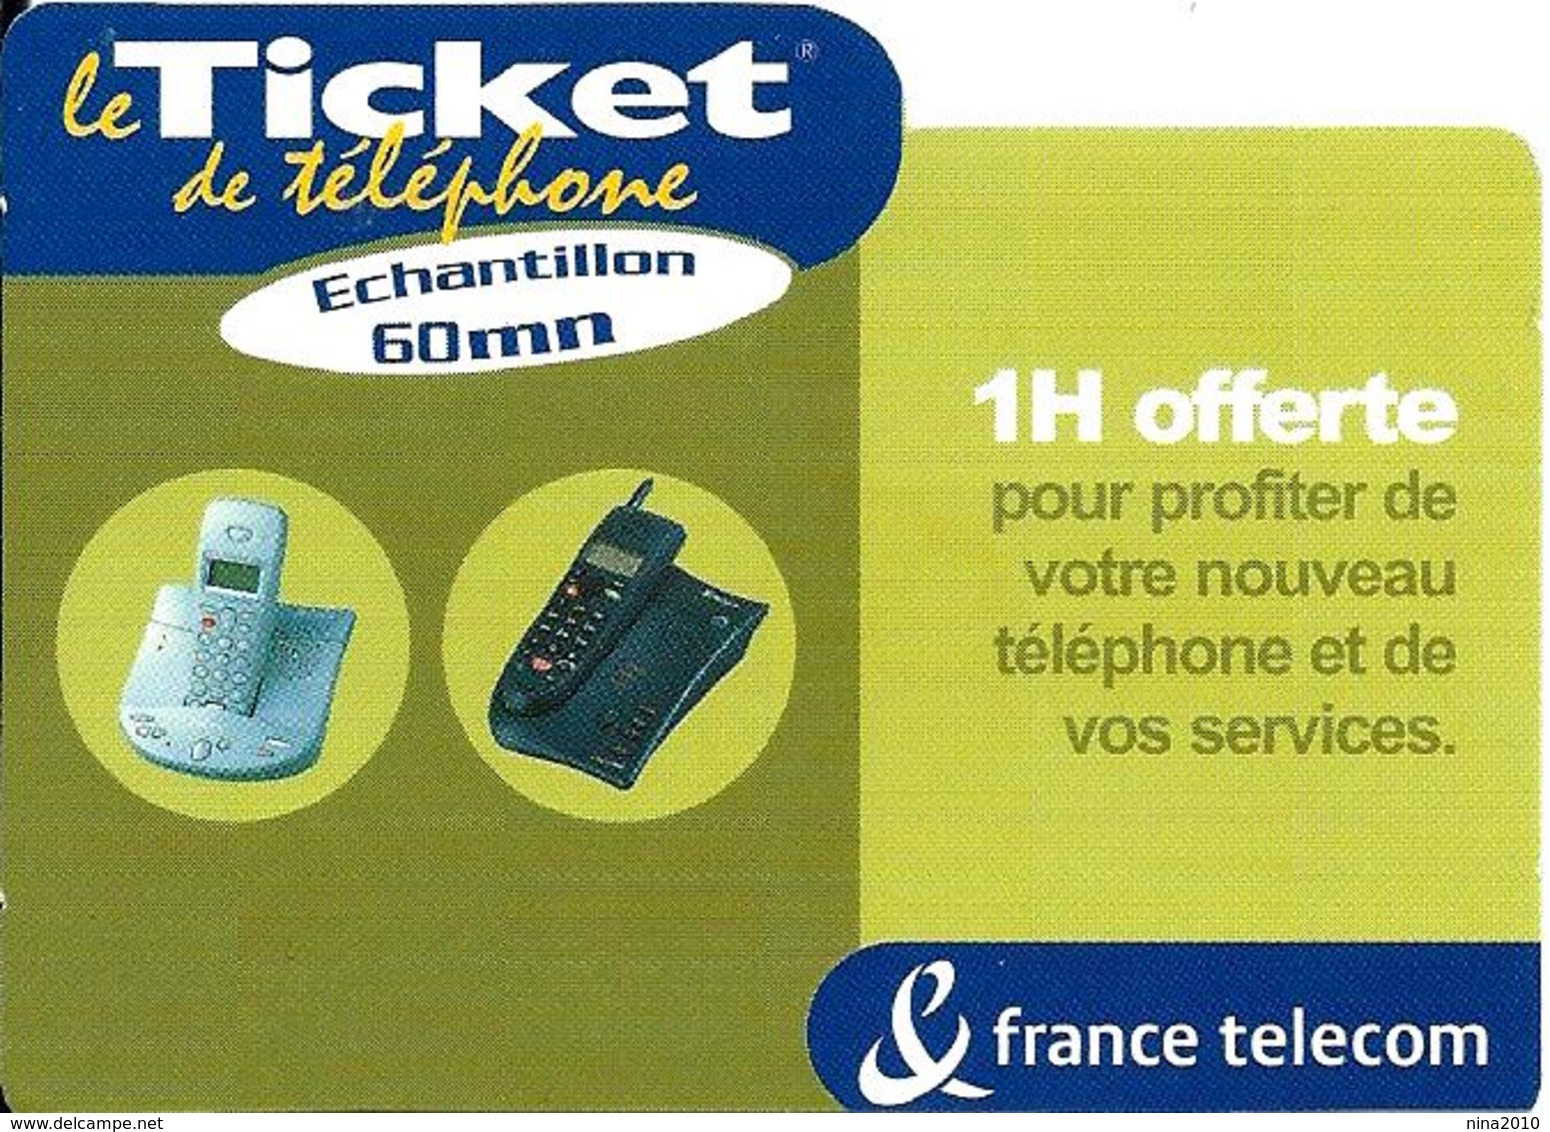 Ticket De Téléphone Privé - 1 H Offerte - 60 000 Ex. (luxe) - 15/11/2002 - Tickets FT